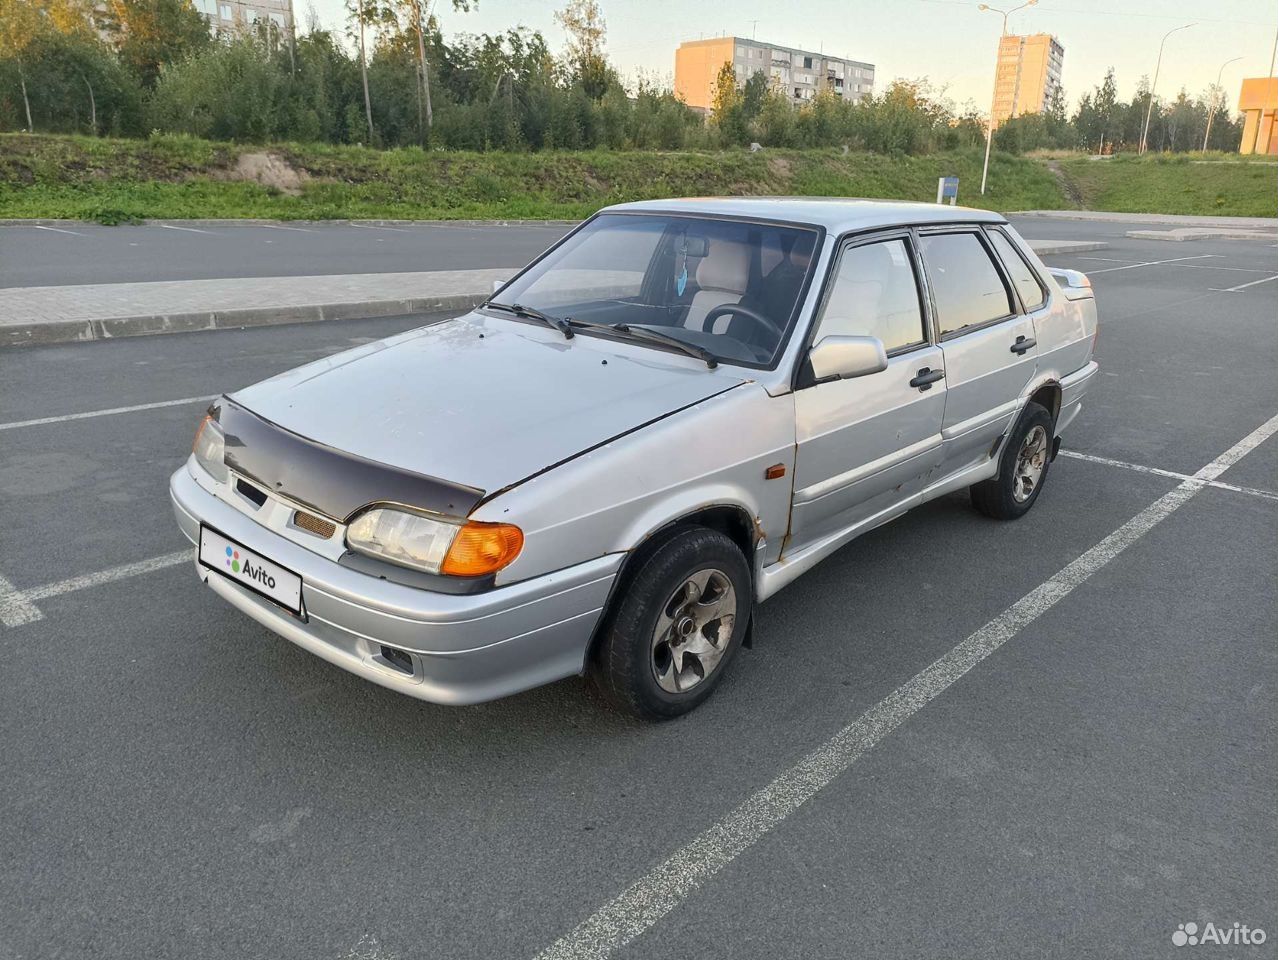 Купить отечественный автомобиль с пробегом в Петрозаводске недорого.